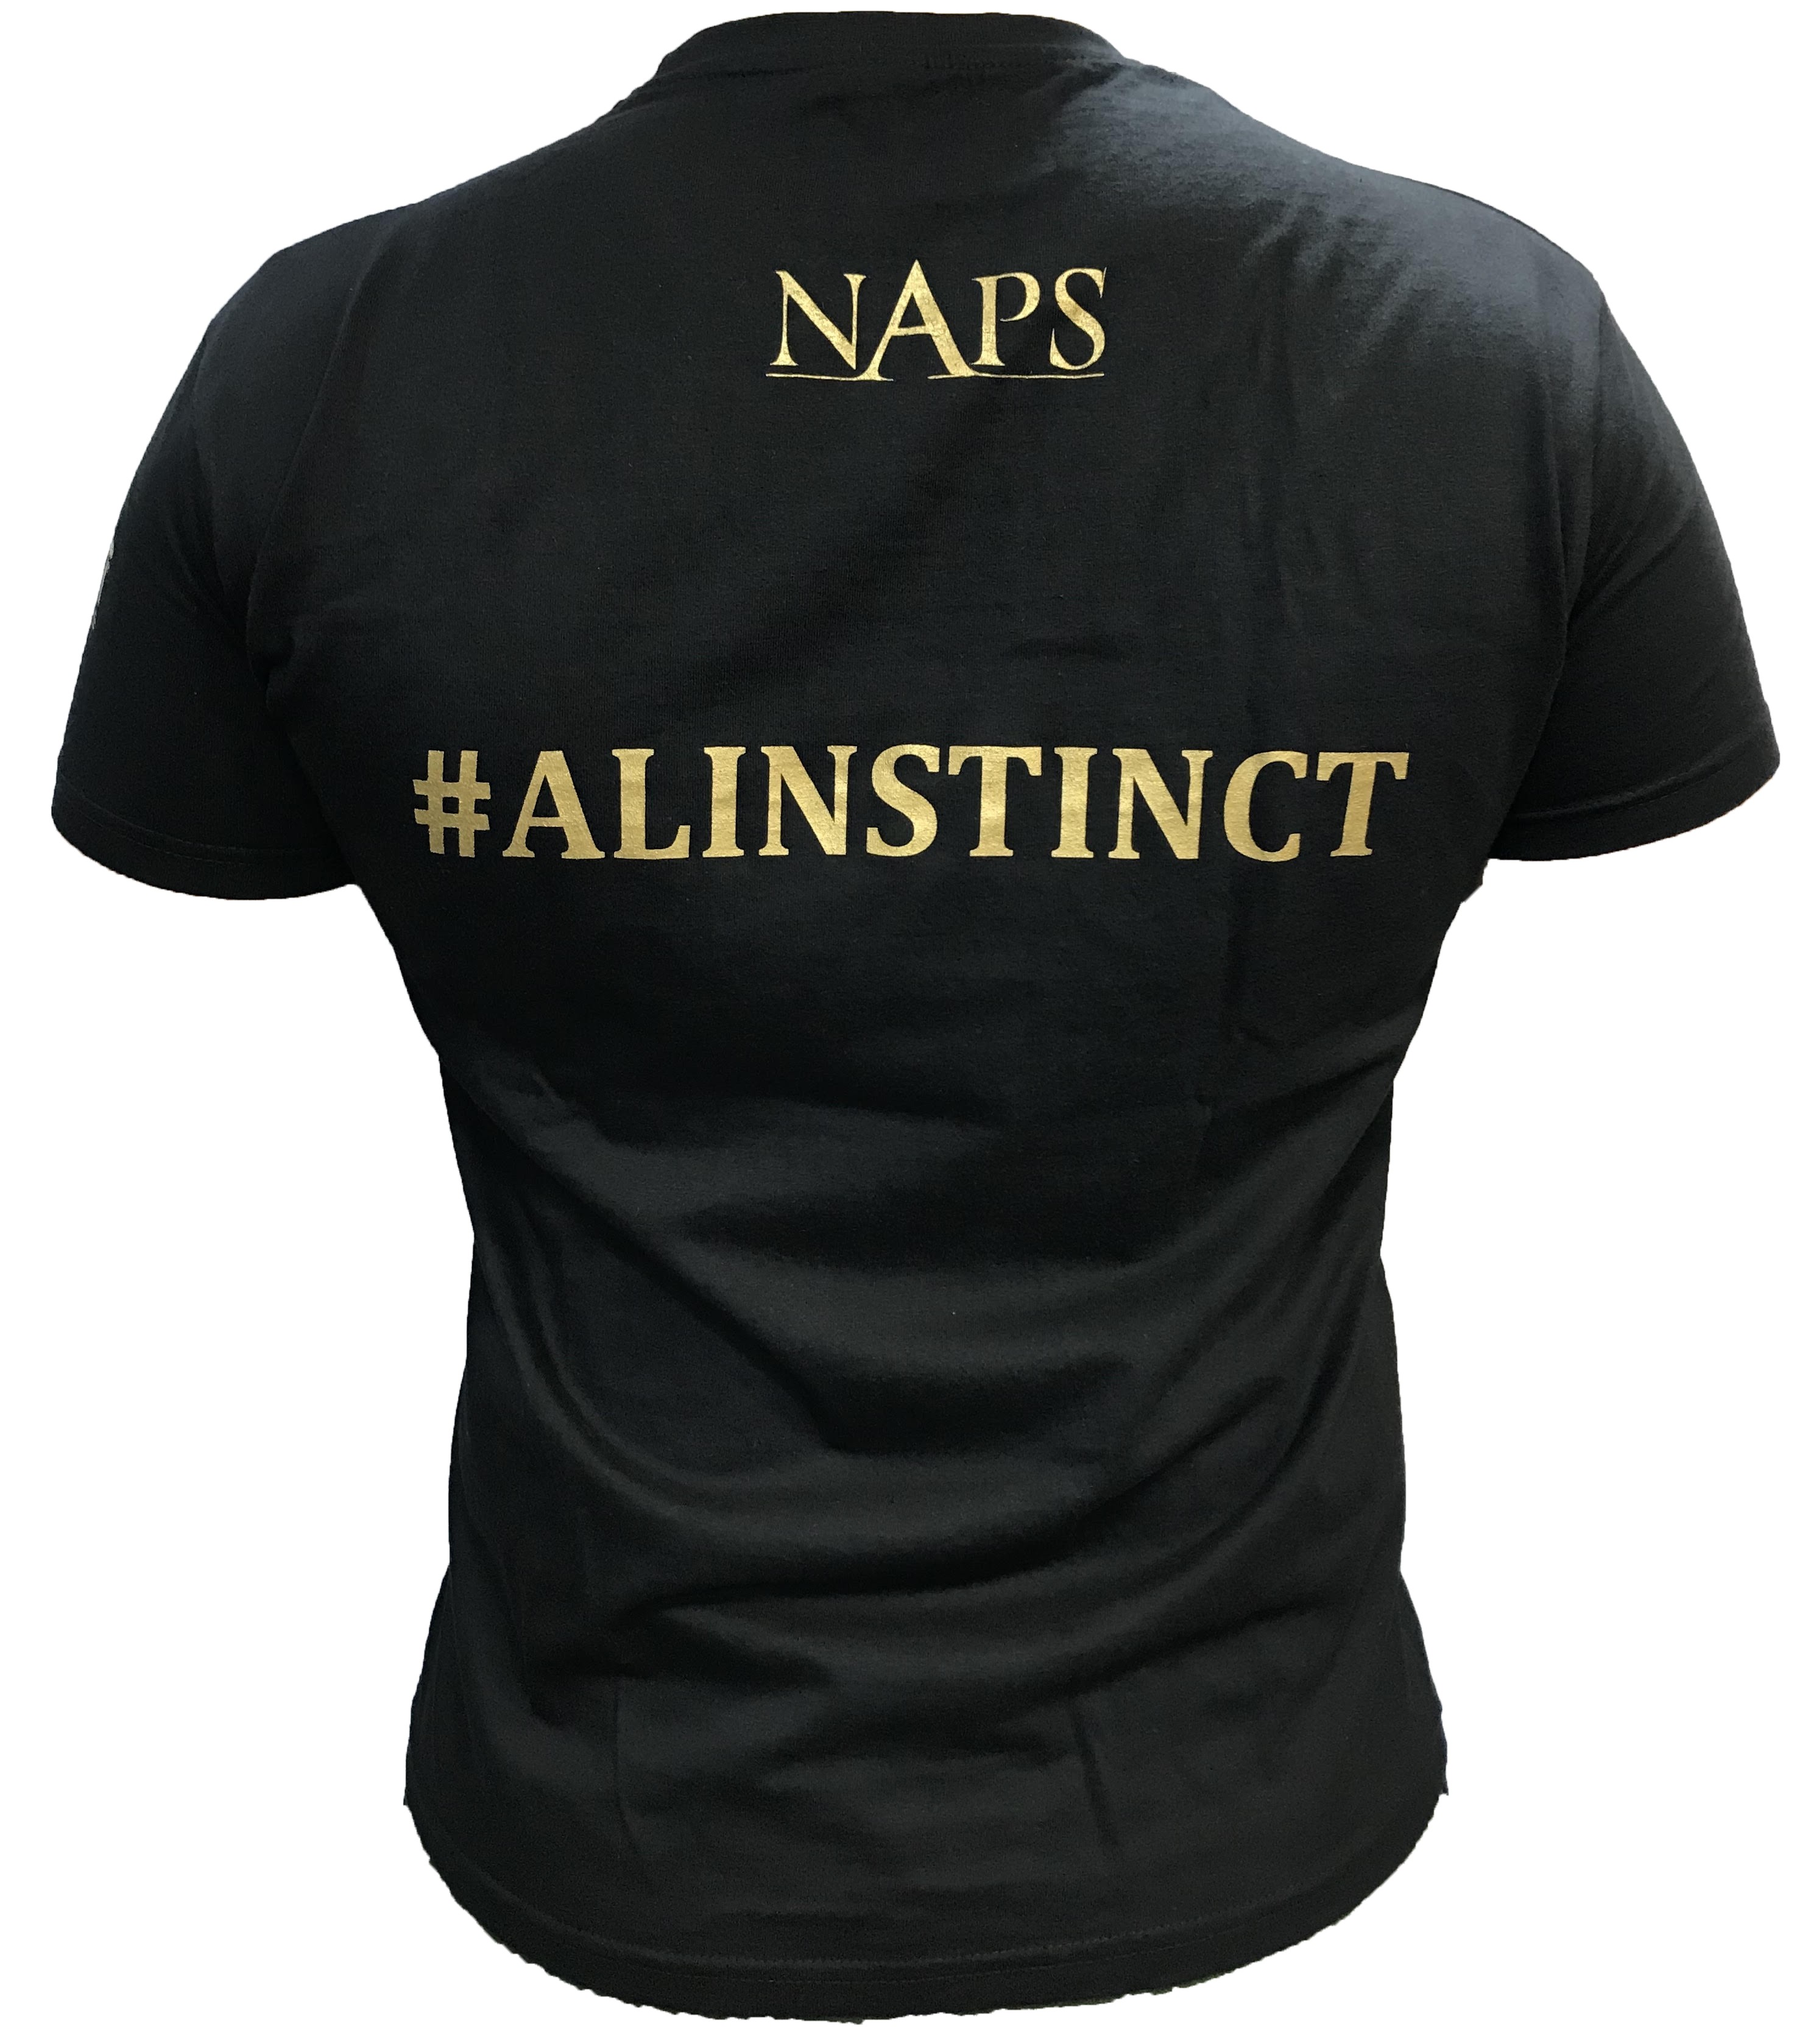 T-shirt NAPS a l'instinct noir - BELSUNCE SHOP